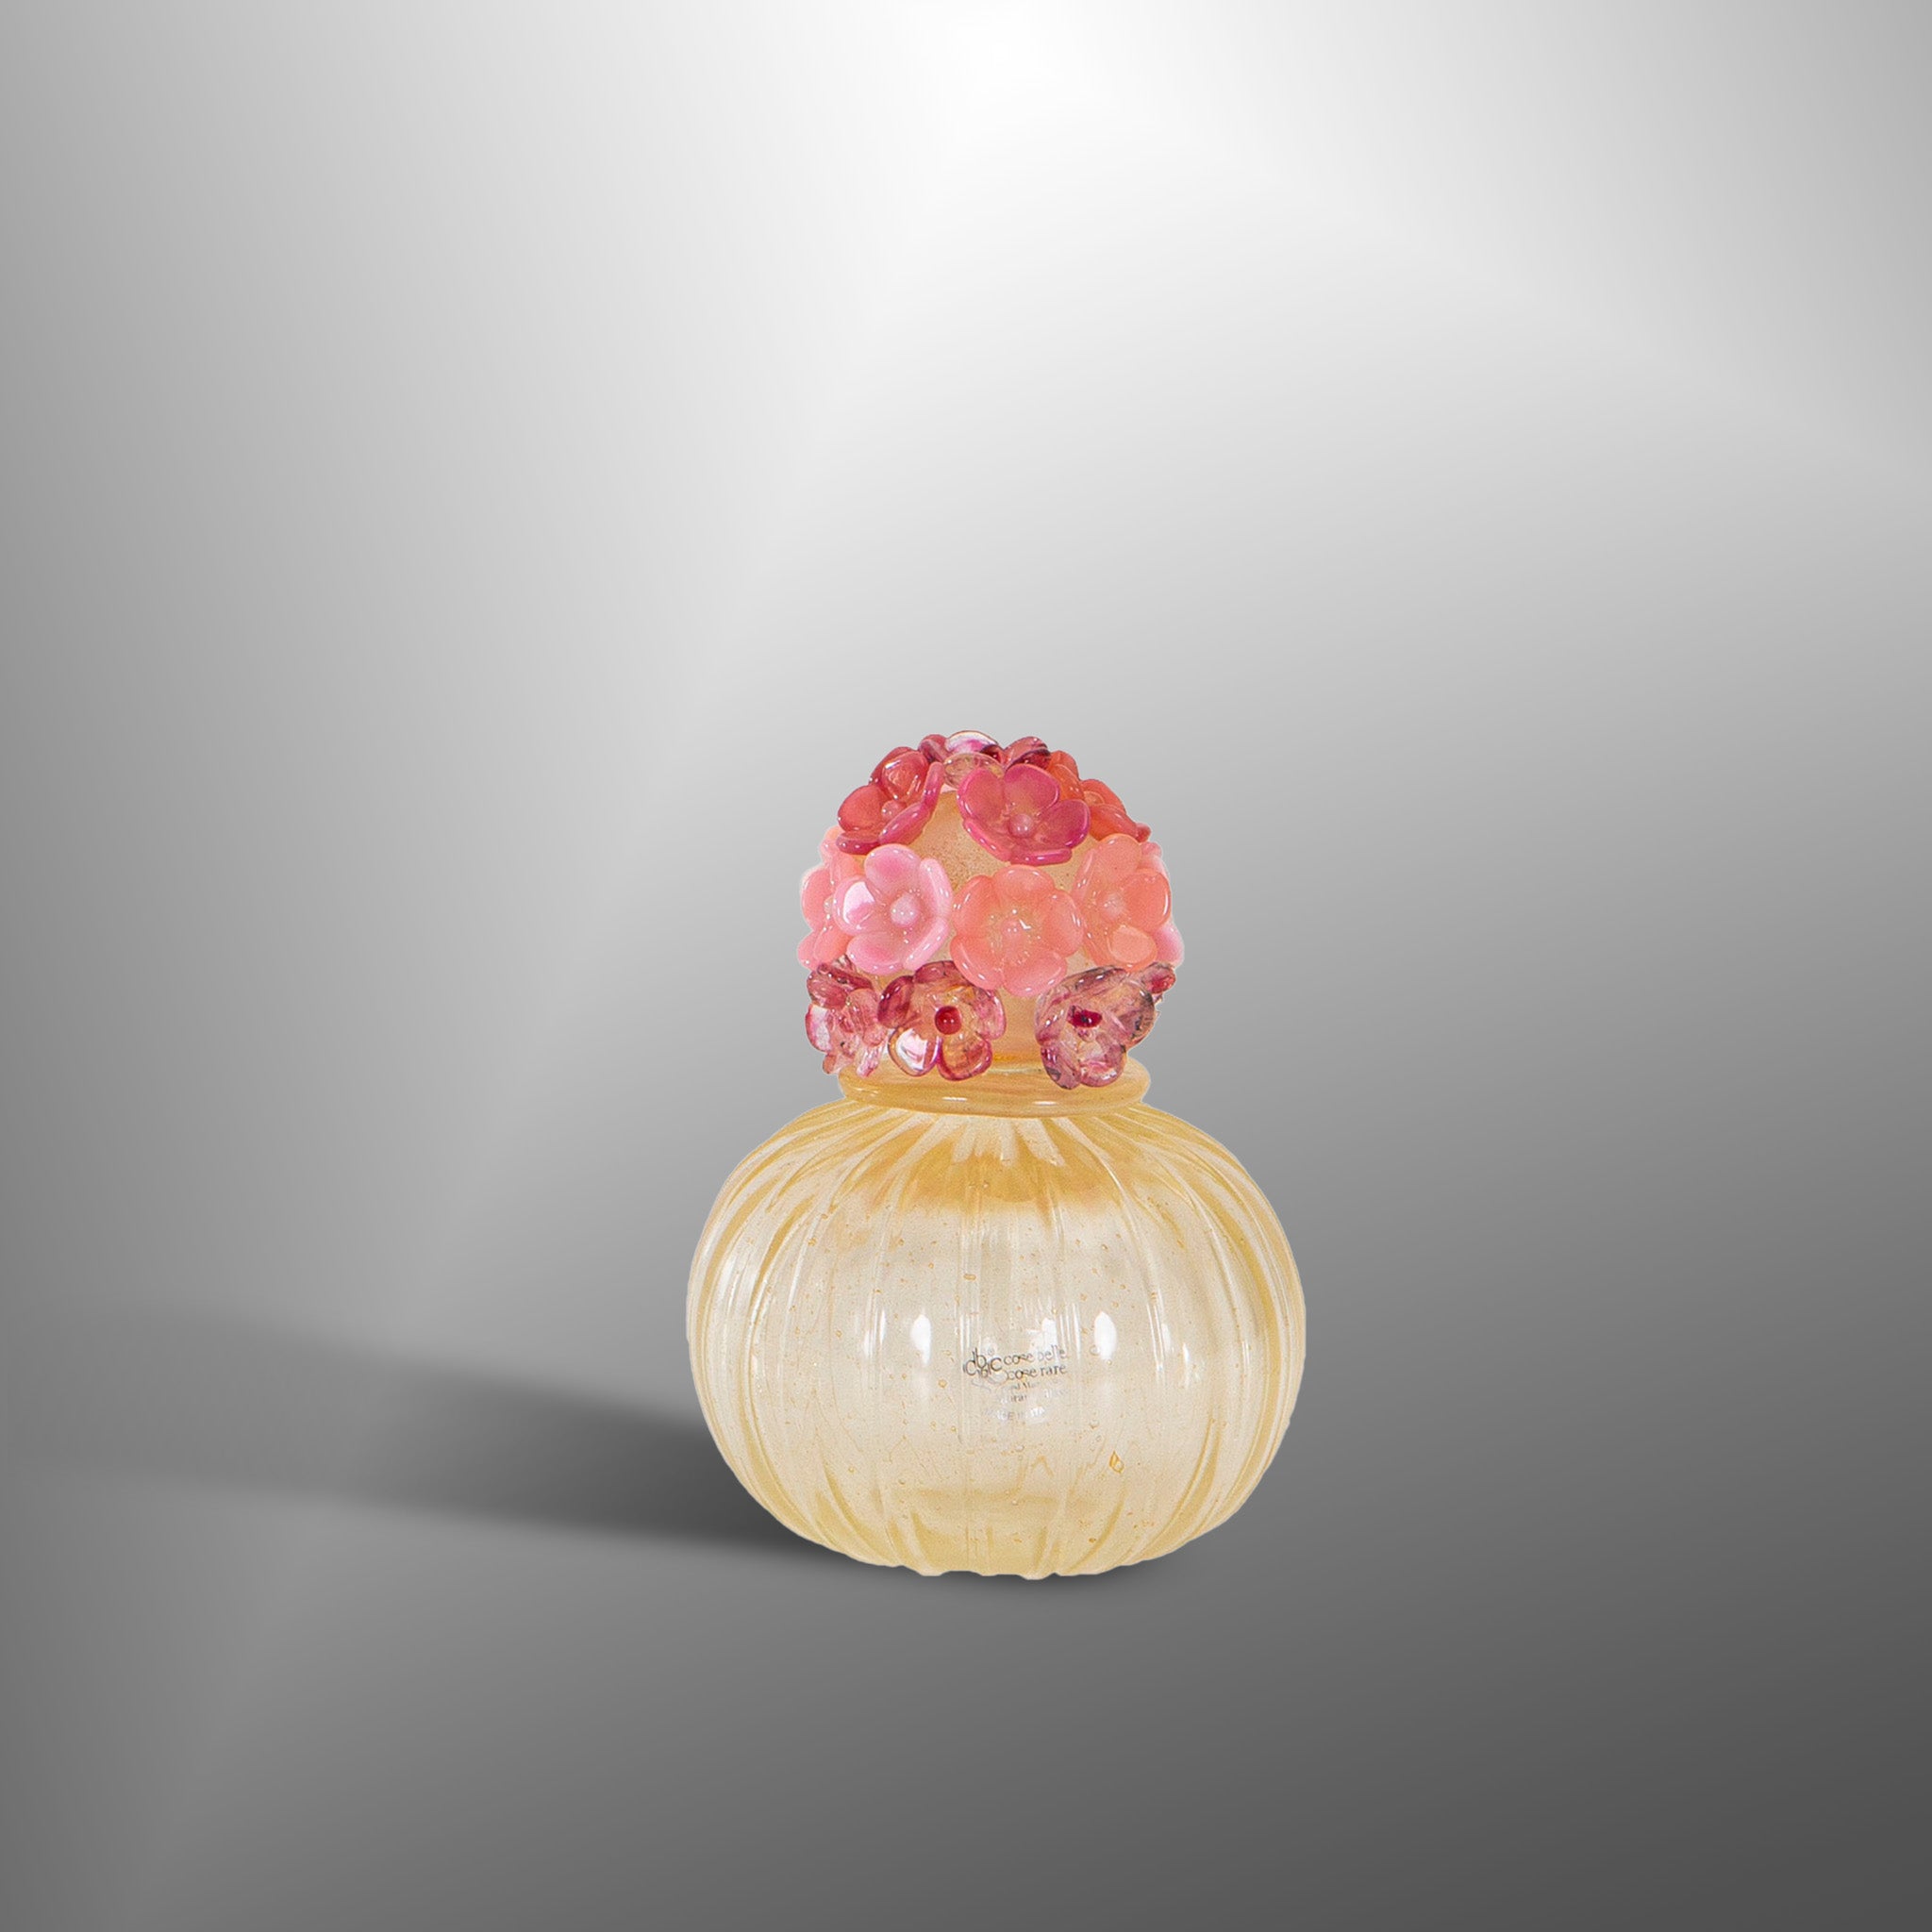 Bottiglie di profumo per ambiente con oro e fiori rosa